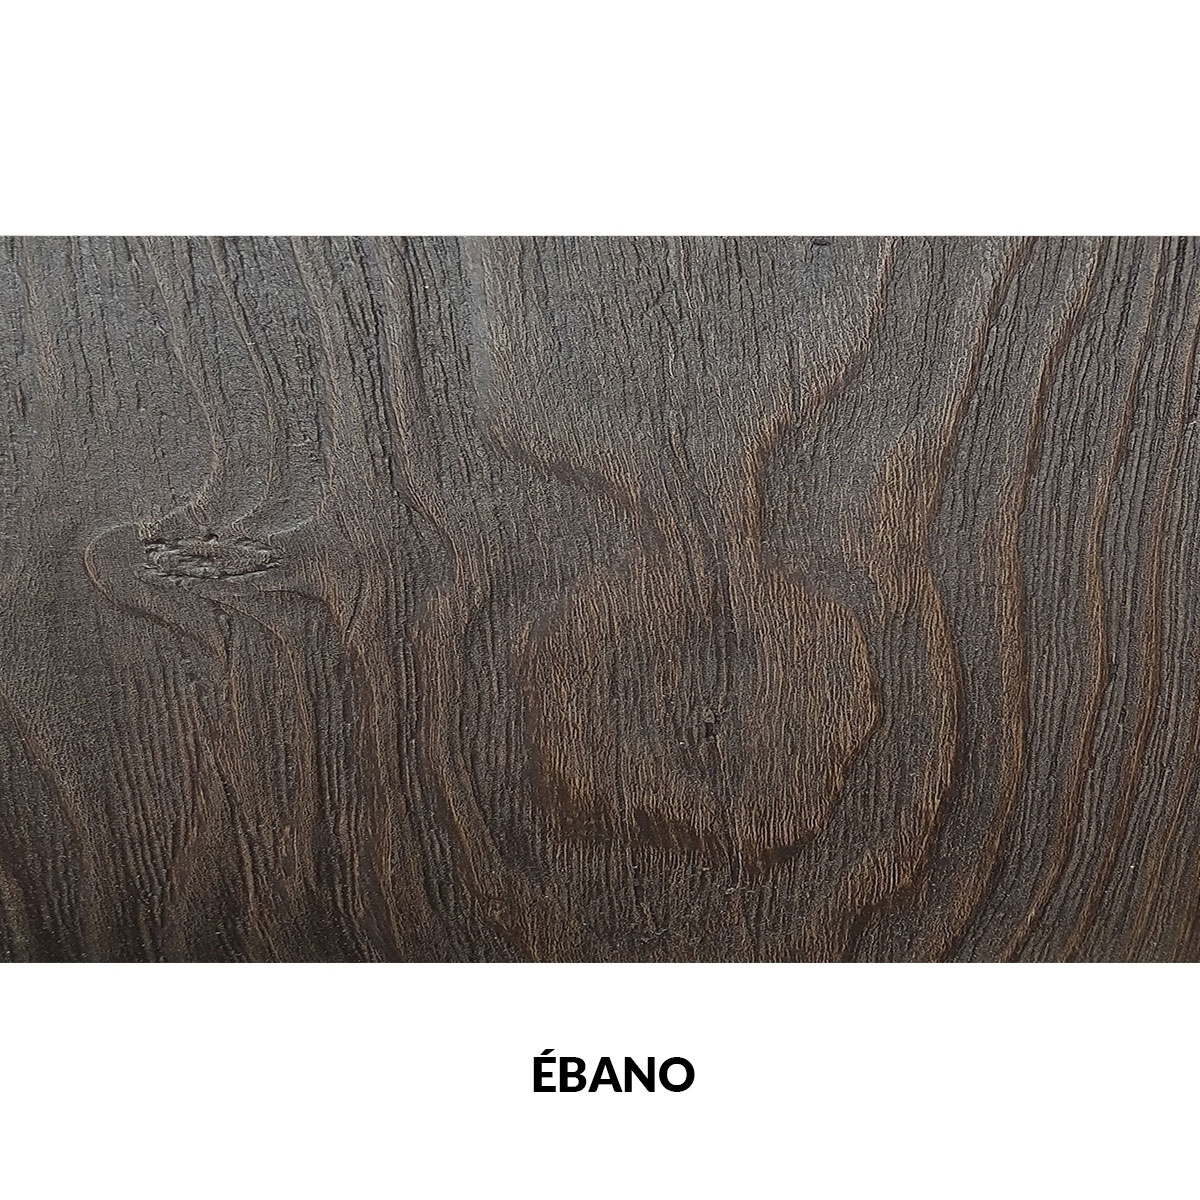 Panel rústico seis lamas imitación madera de 300x62cm ebano